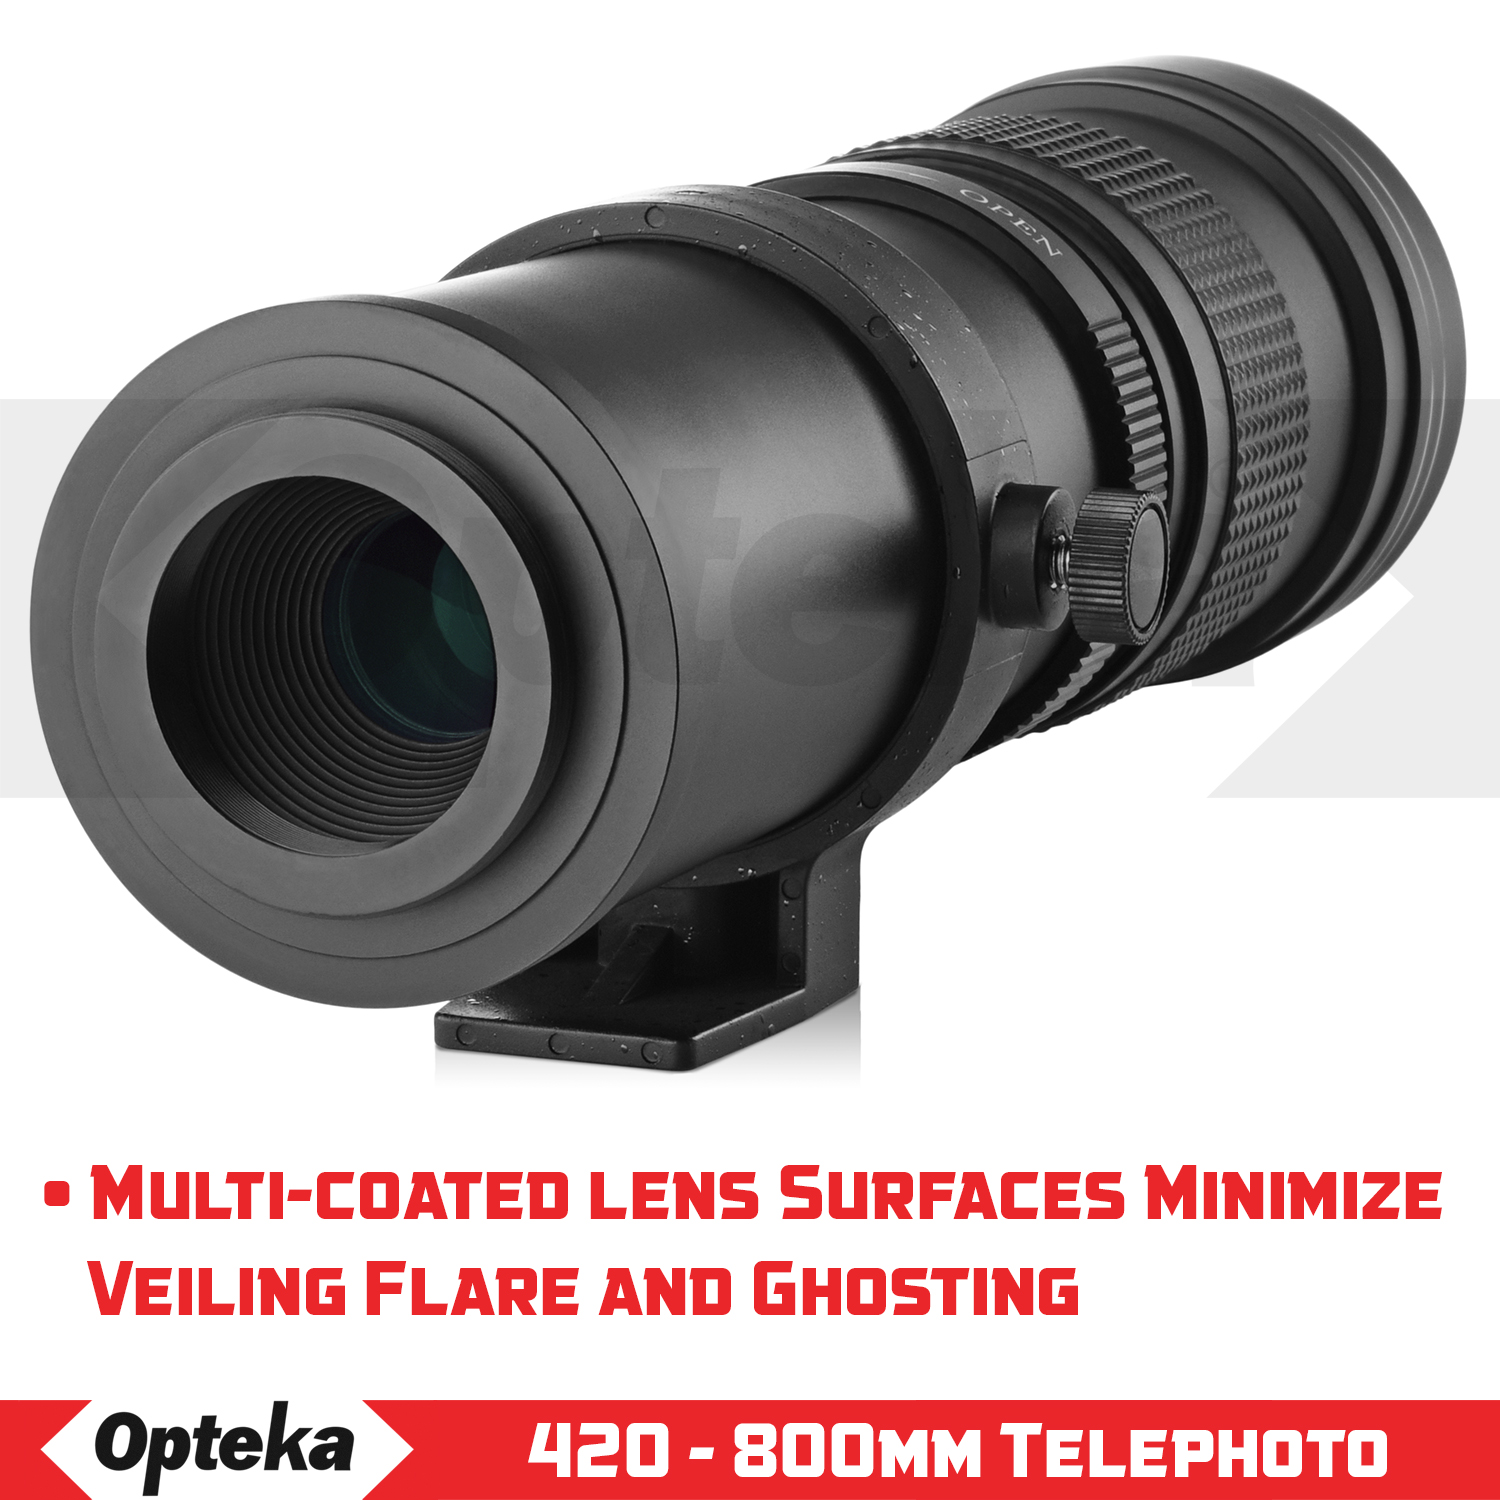 Opteka 420-800mm f/8.3 Telephoto Zoom Lens for Nikon Z6, Z7, Z50 Digital Mirrorless Digital SLR Cameras - image 4 of 10